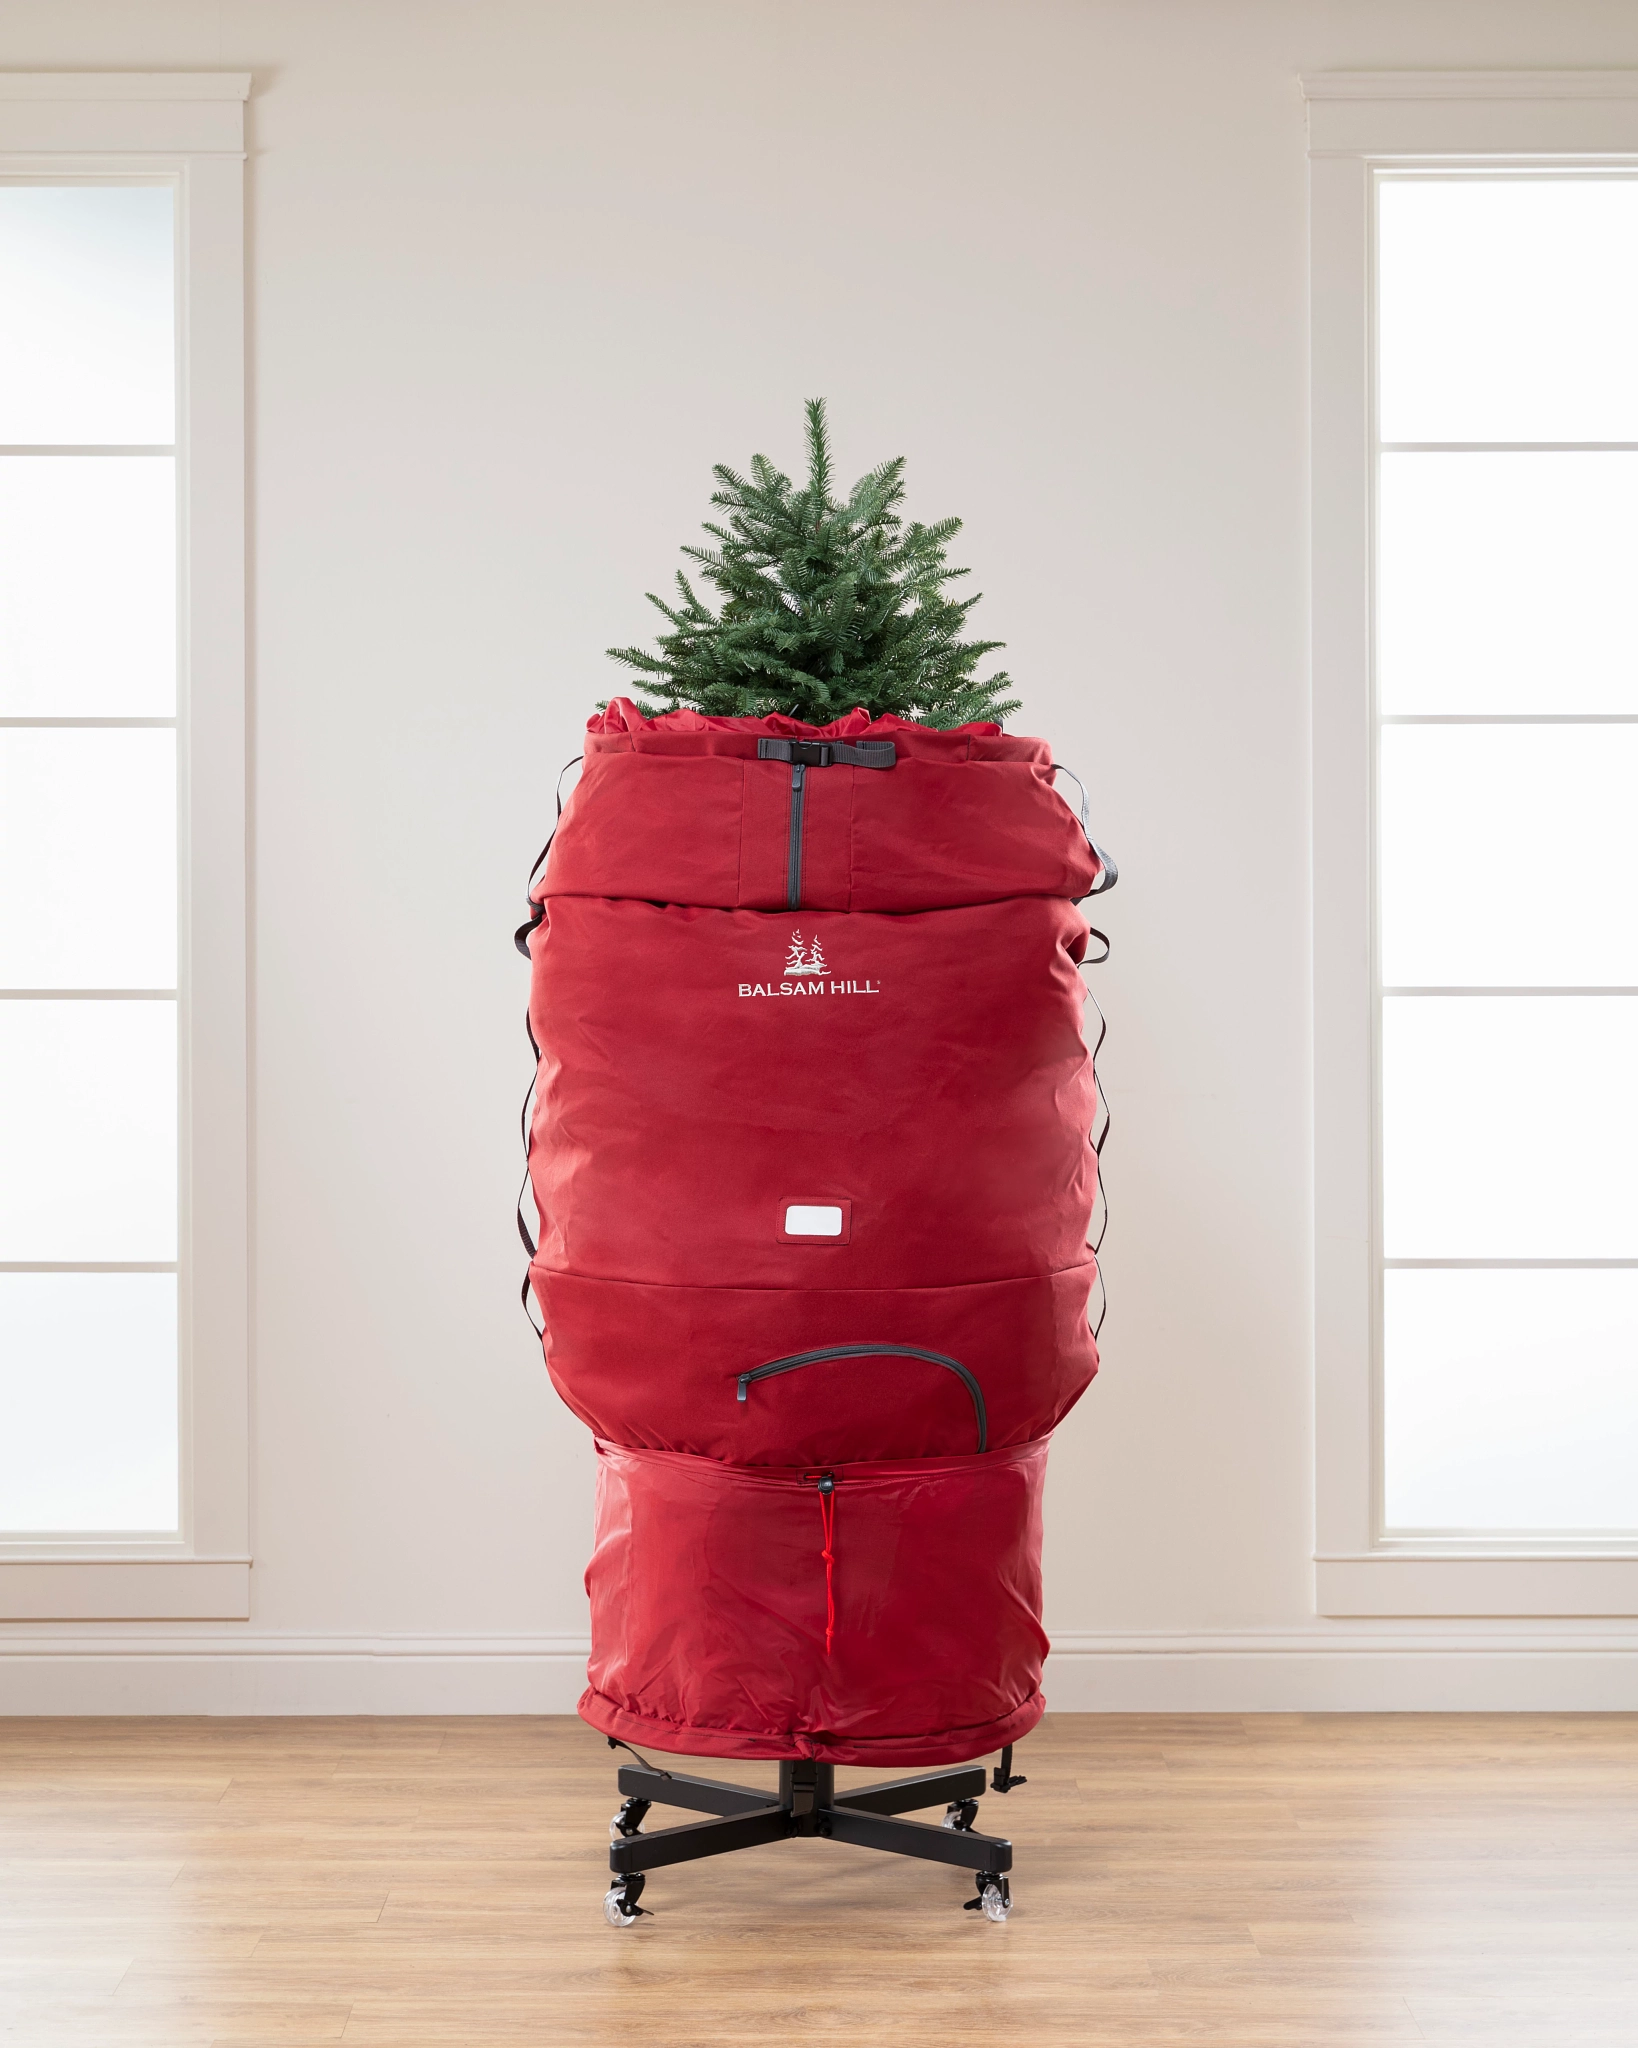 FNSAOM Sac de rangement à roulettes pour sapin de Noël, compatible avec les  arbres démontés, sac de rangement pour sapin de Noël, boîte de rangement  extra large et robuste avec poignées 